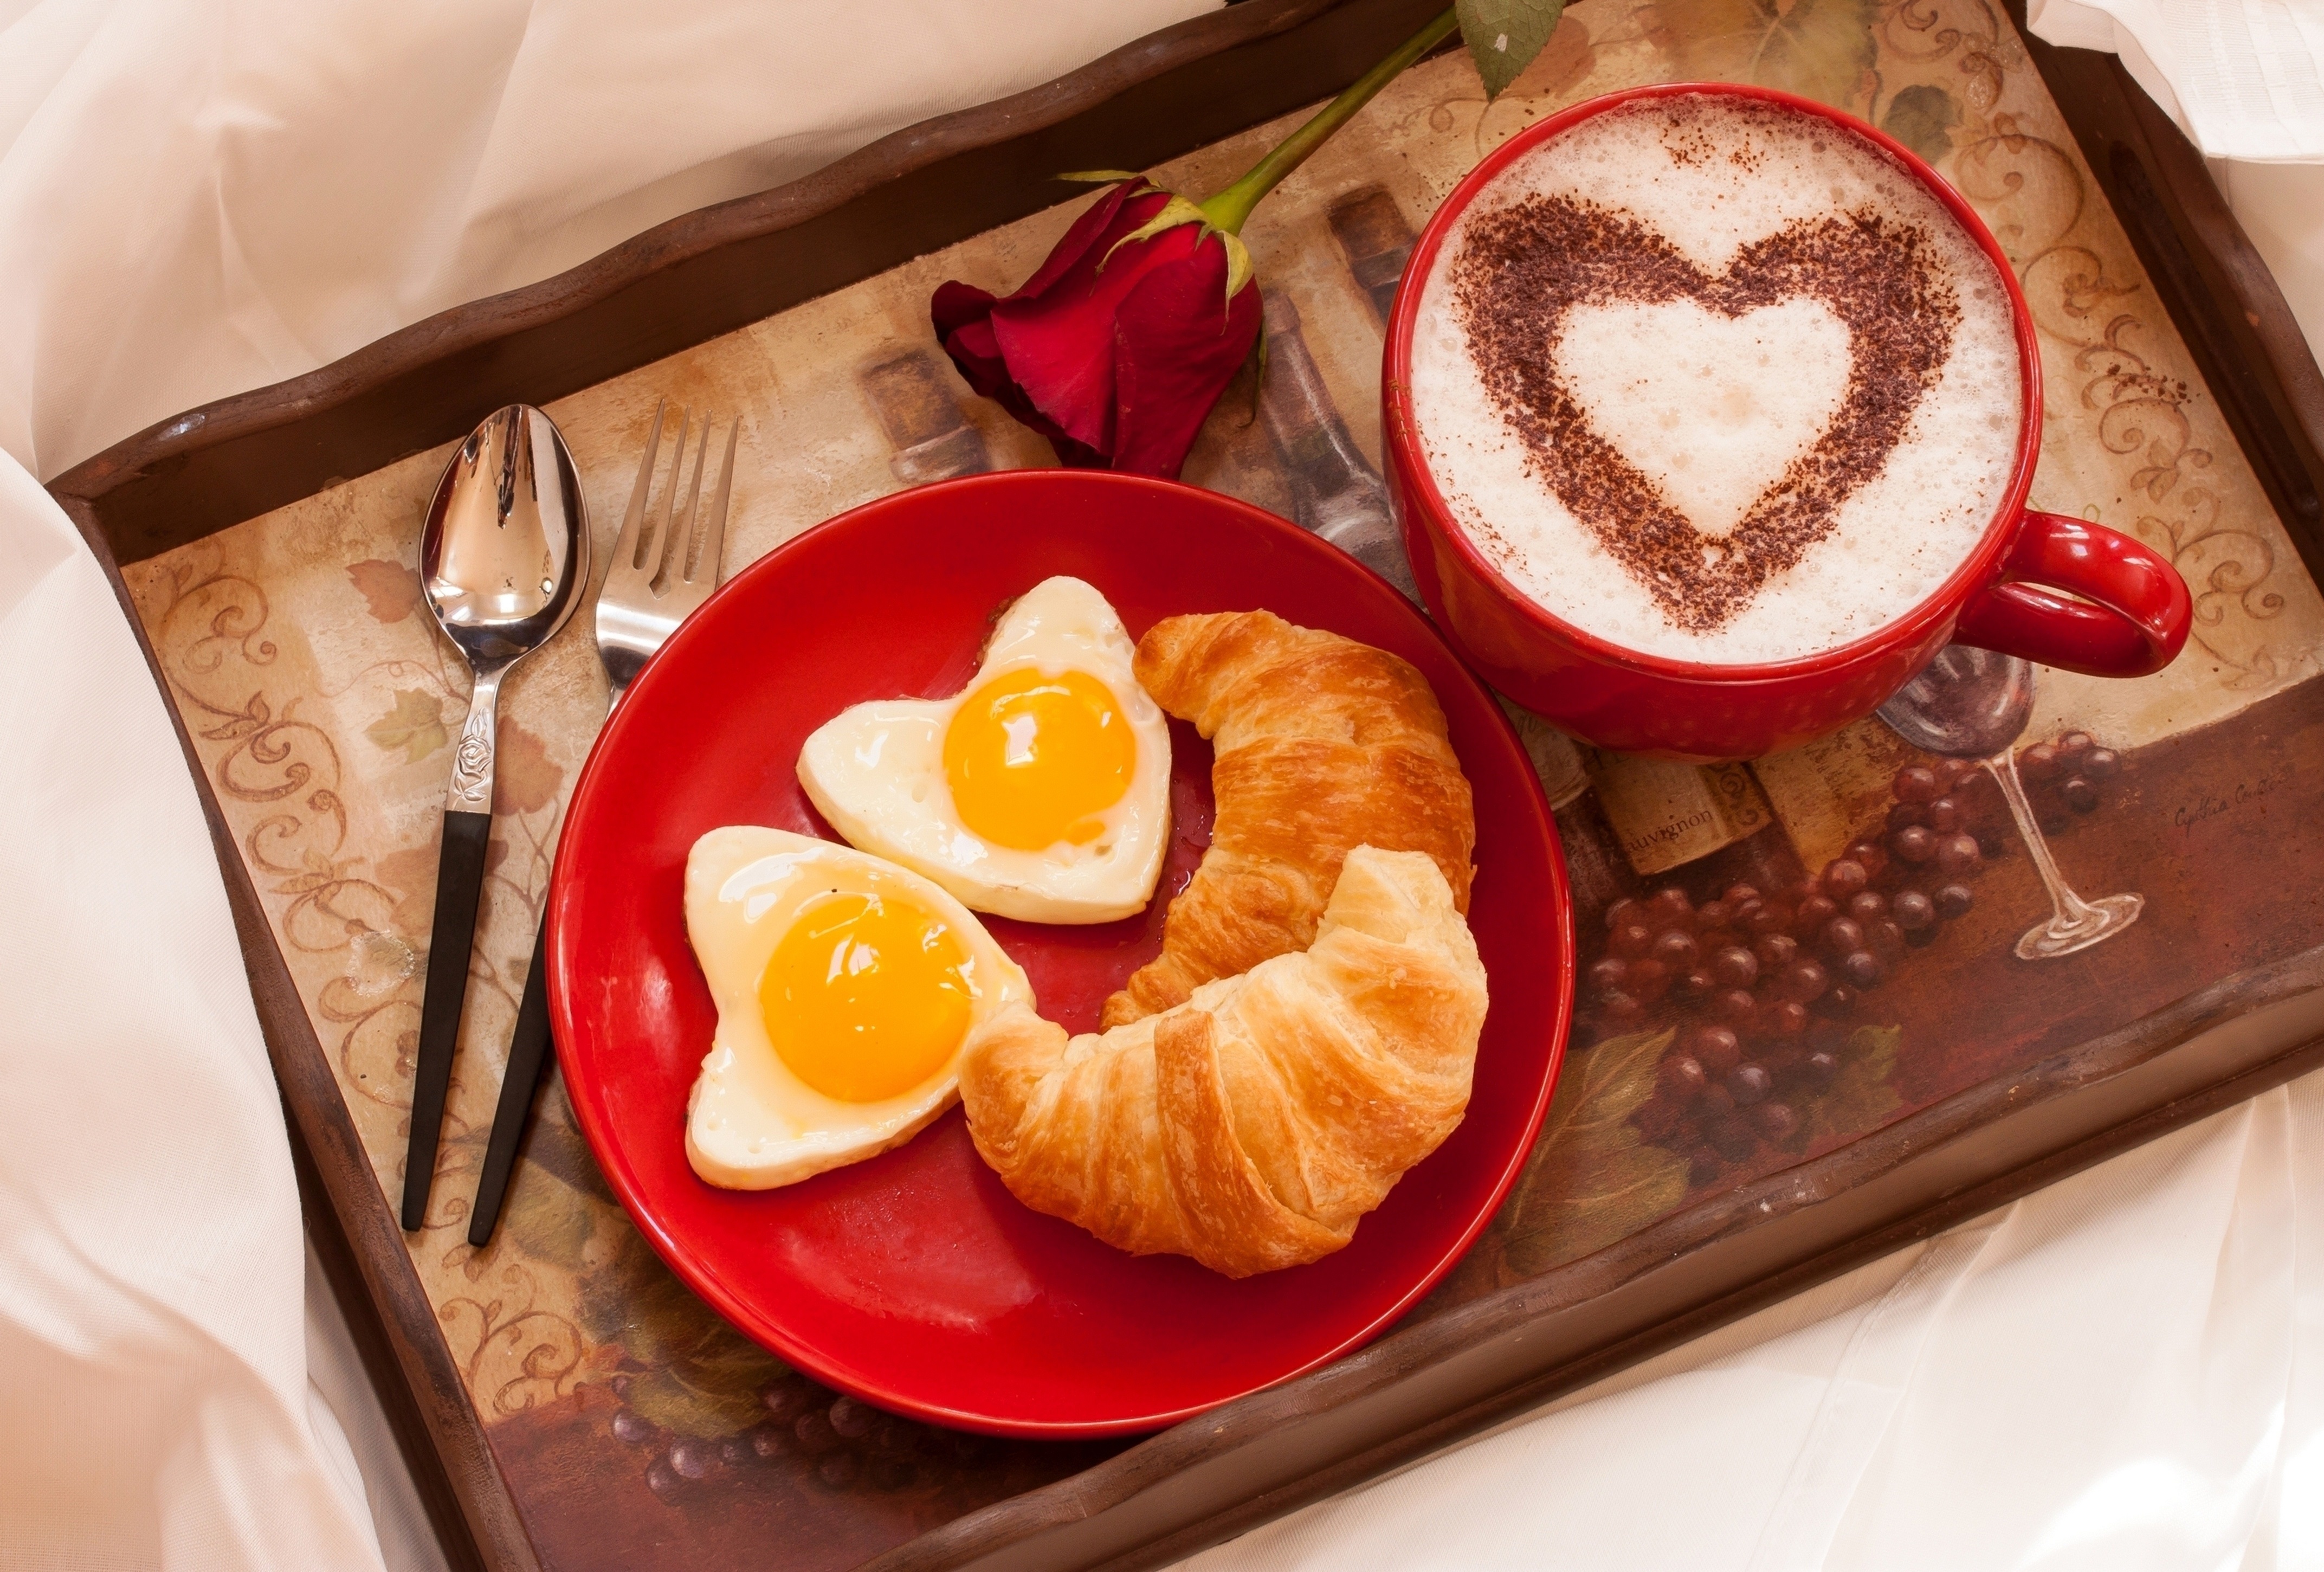 Завтрак в постель 1 2. Романтический завтрак. Завтрак в постель любимому. Красивый завтрак в постель. Вкусный романтический завтрак.